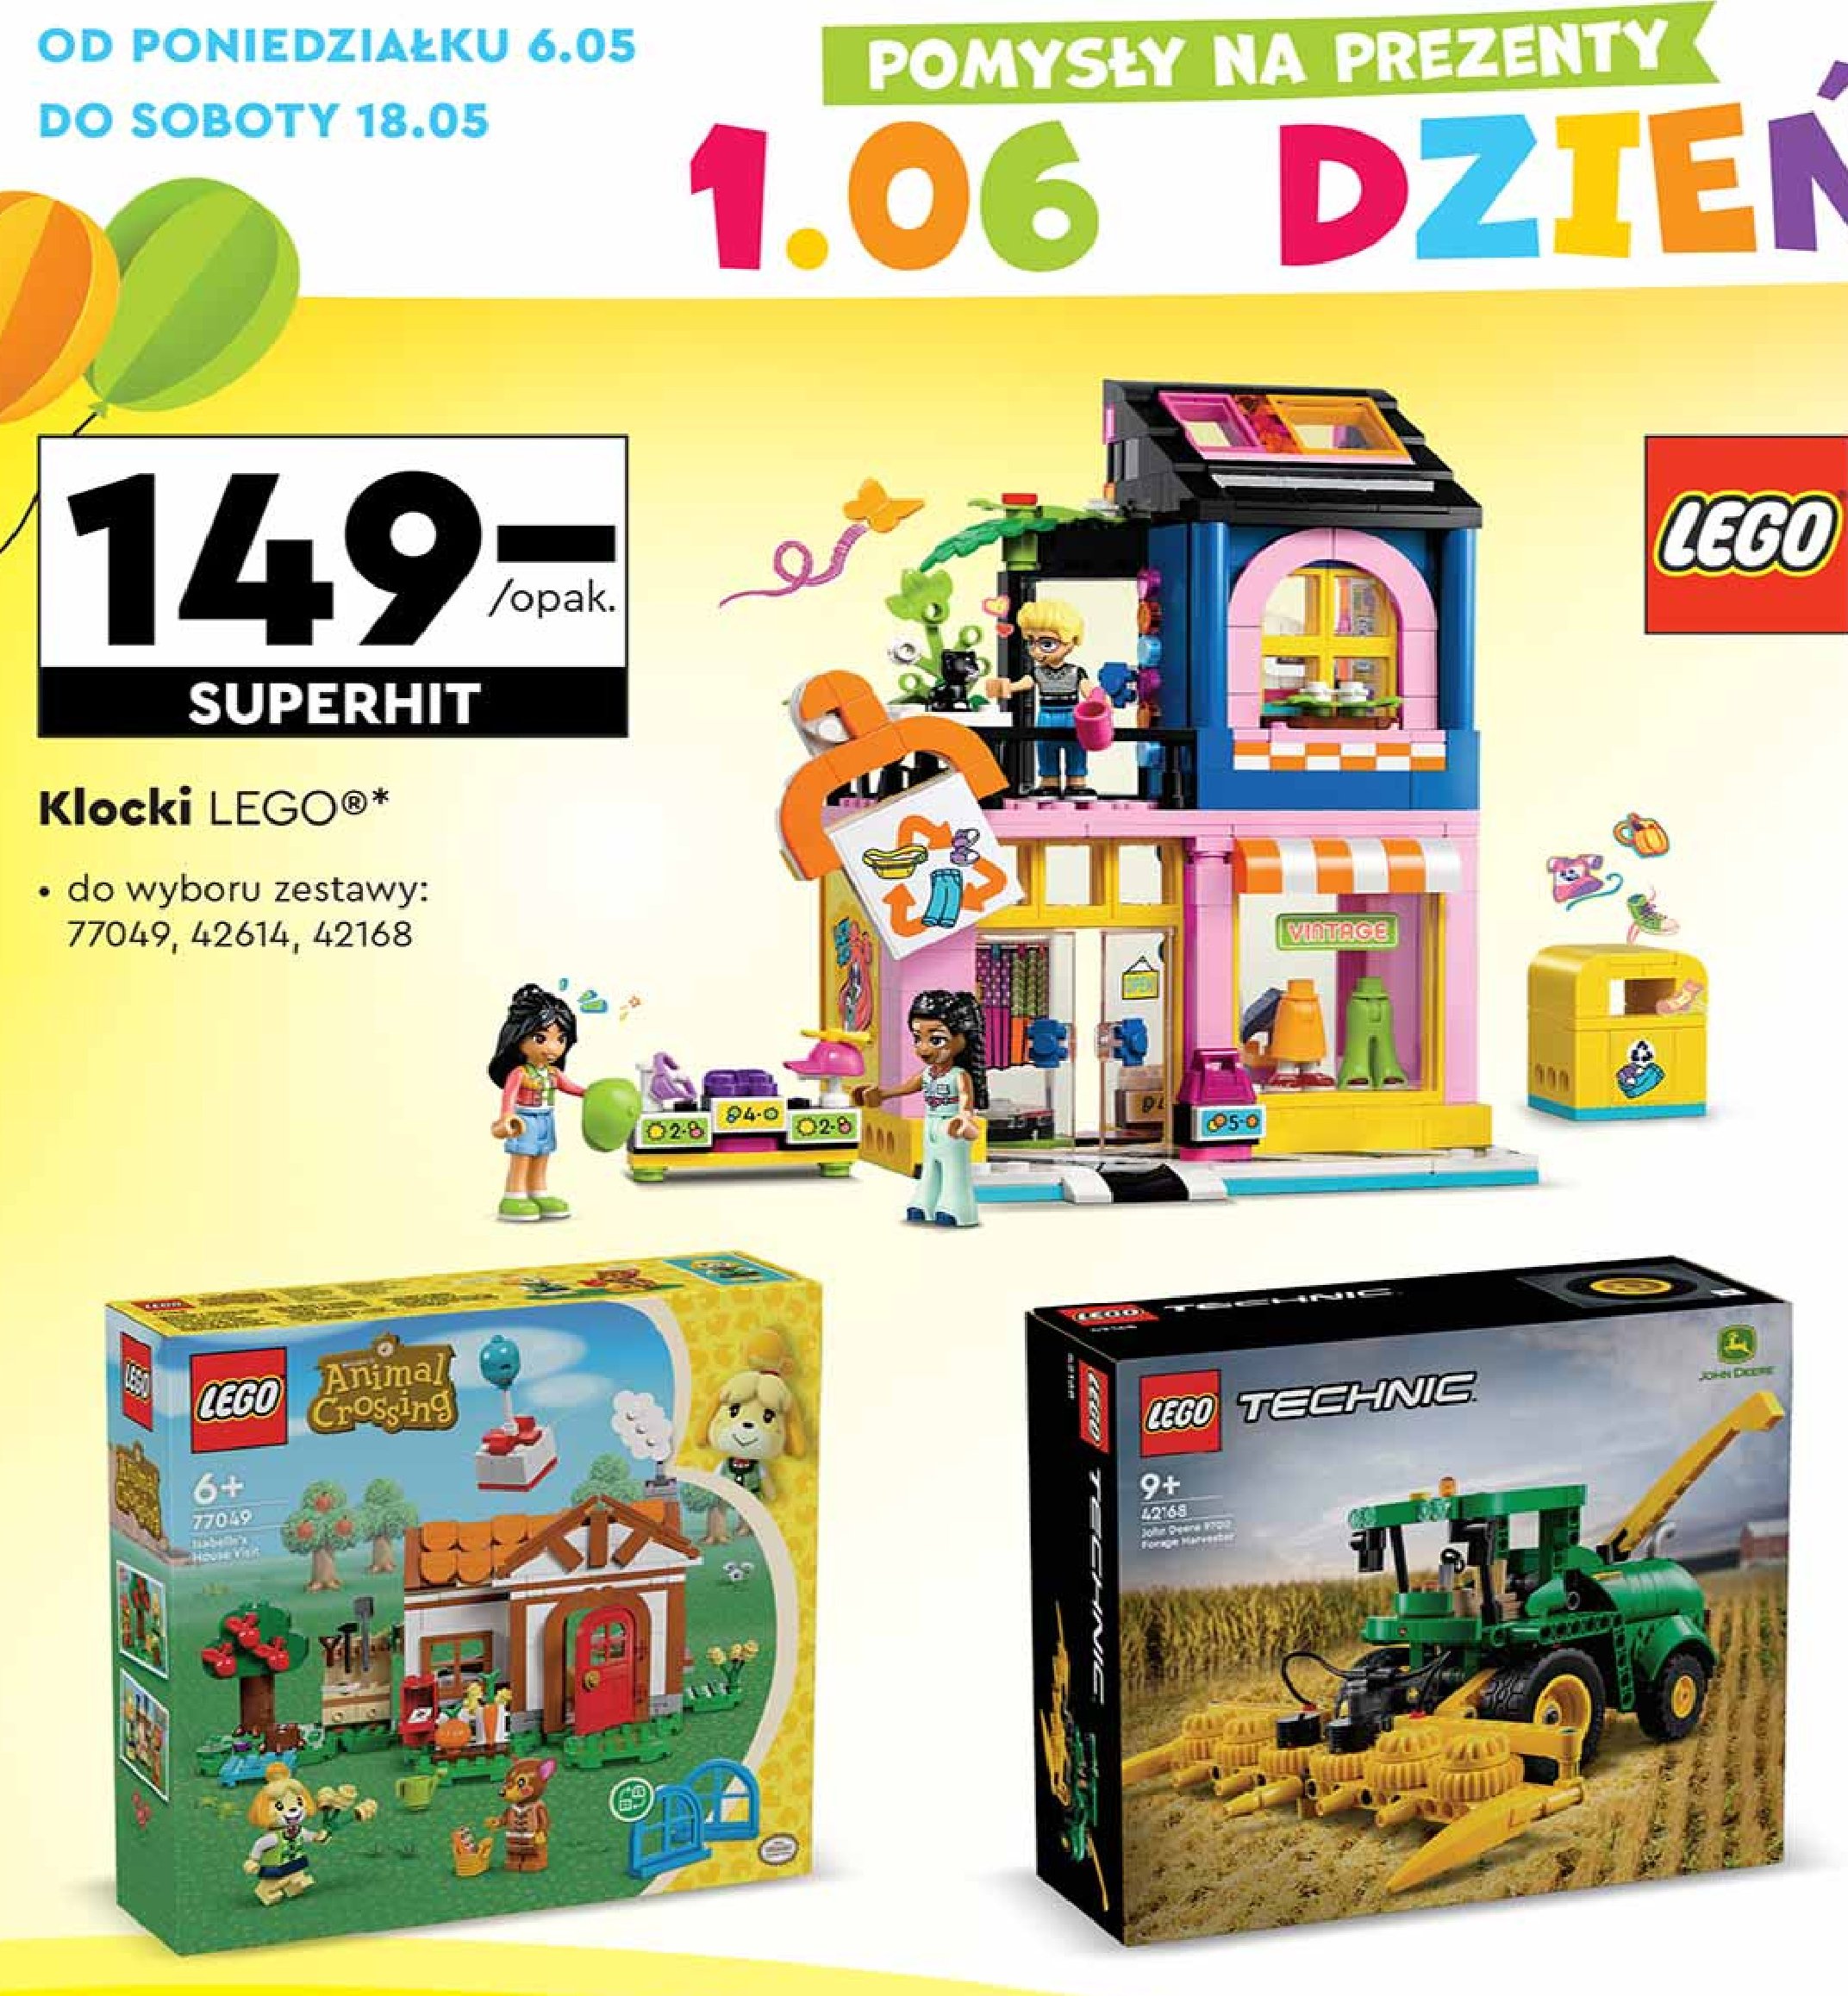 Klocki 77049 Lego animal crossing promocja